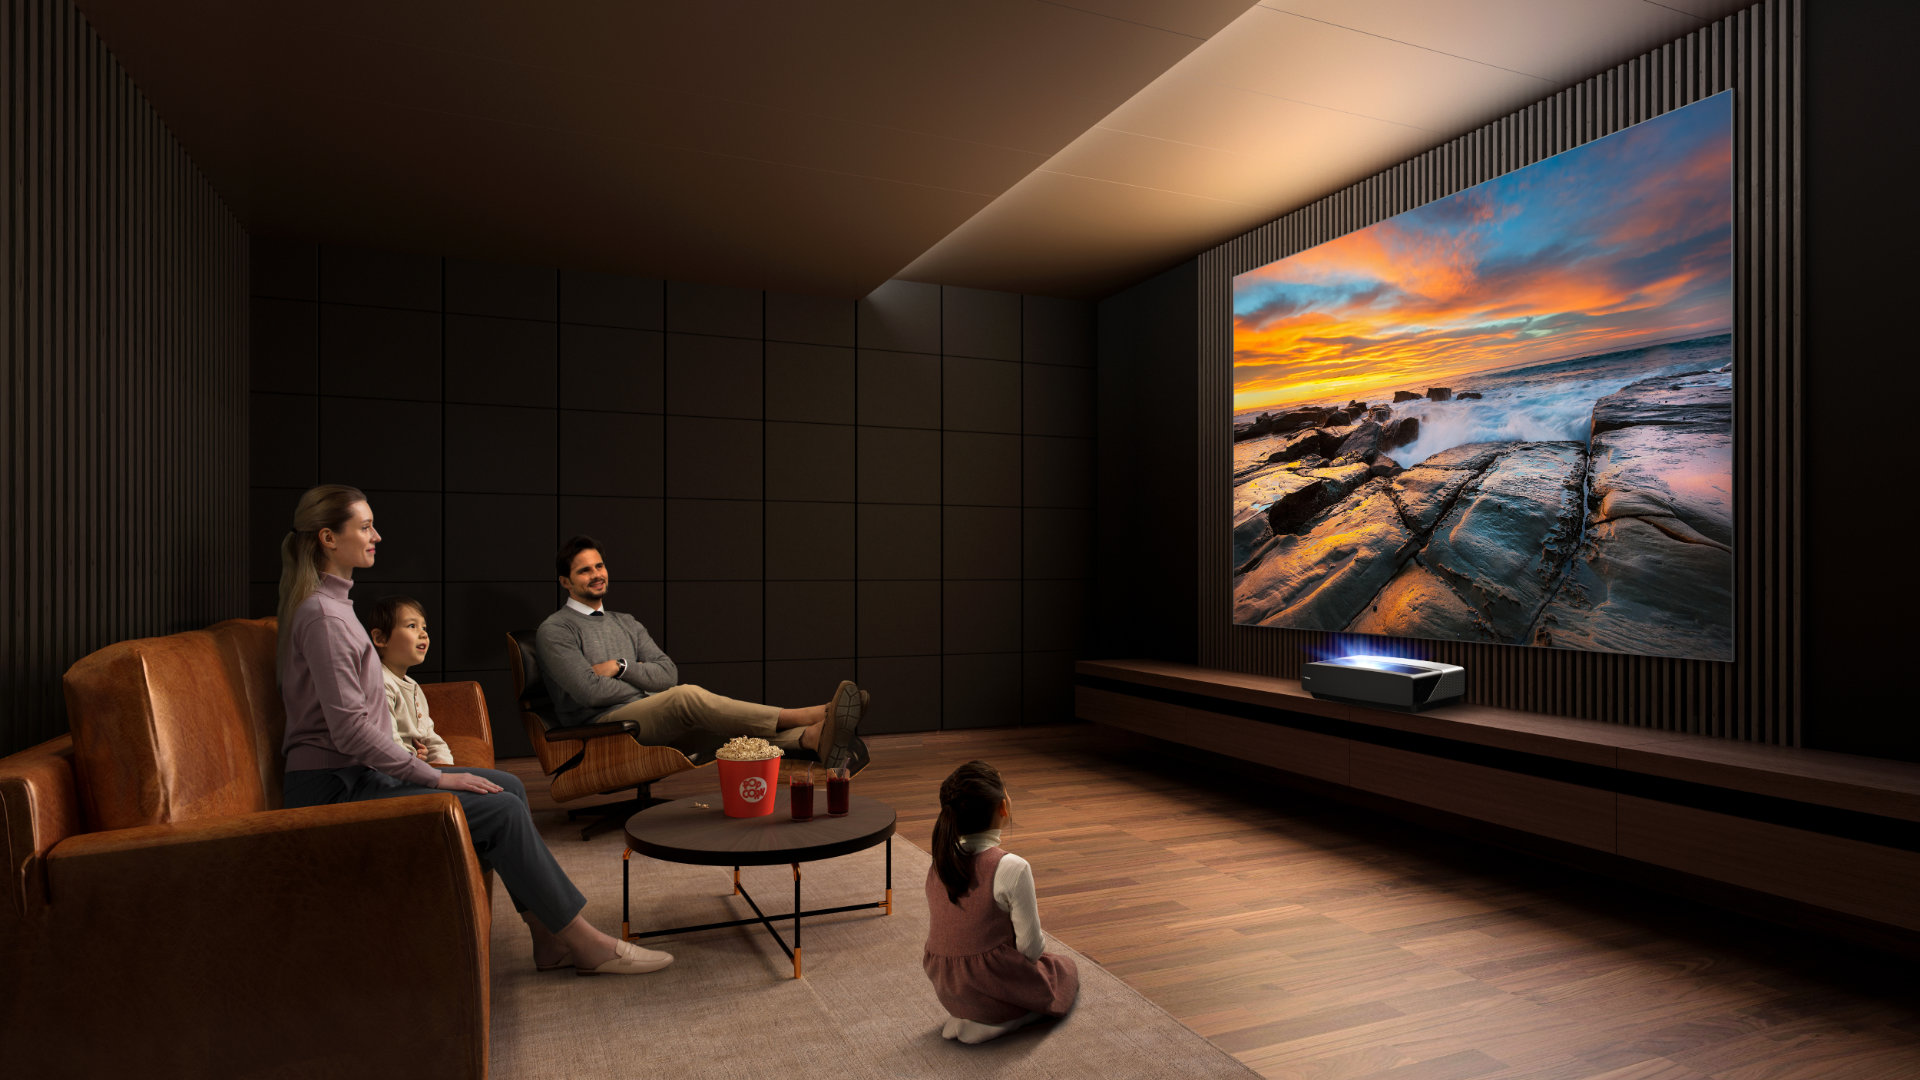 Le vidéoprojecteur ultracourte focale remplace le TV dans les salons